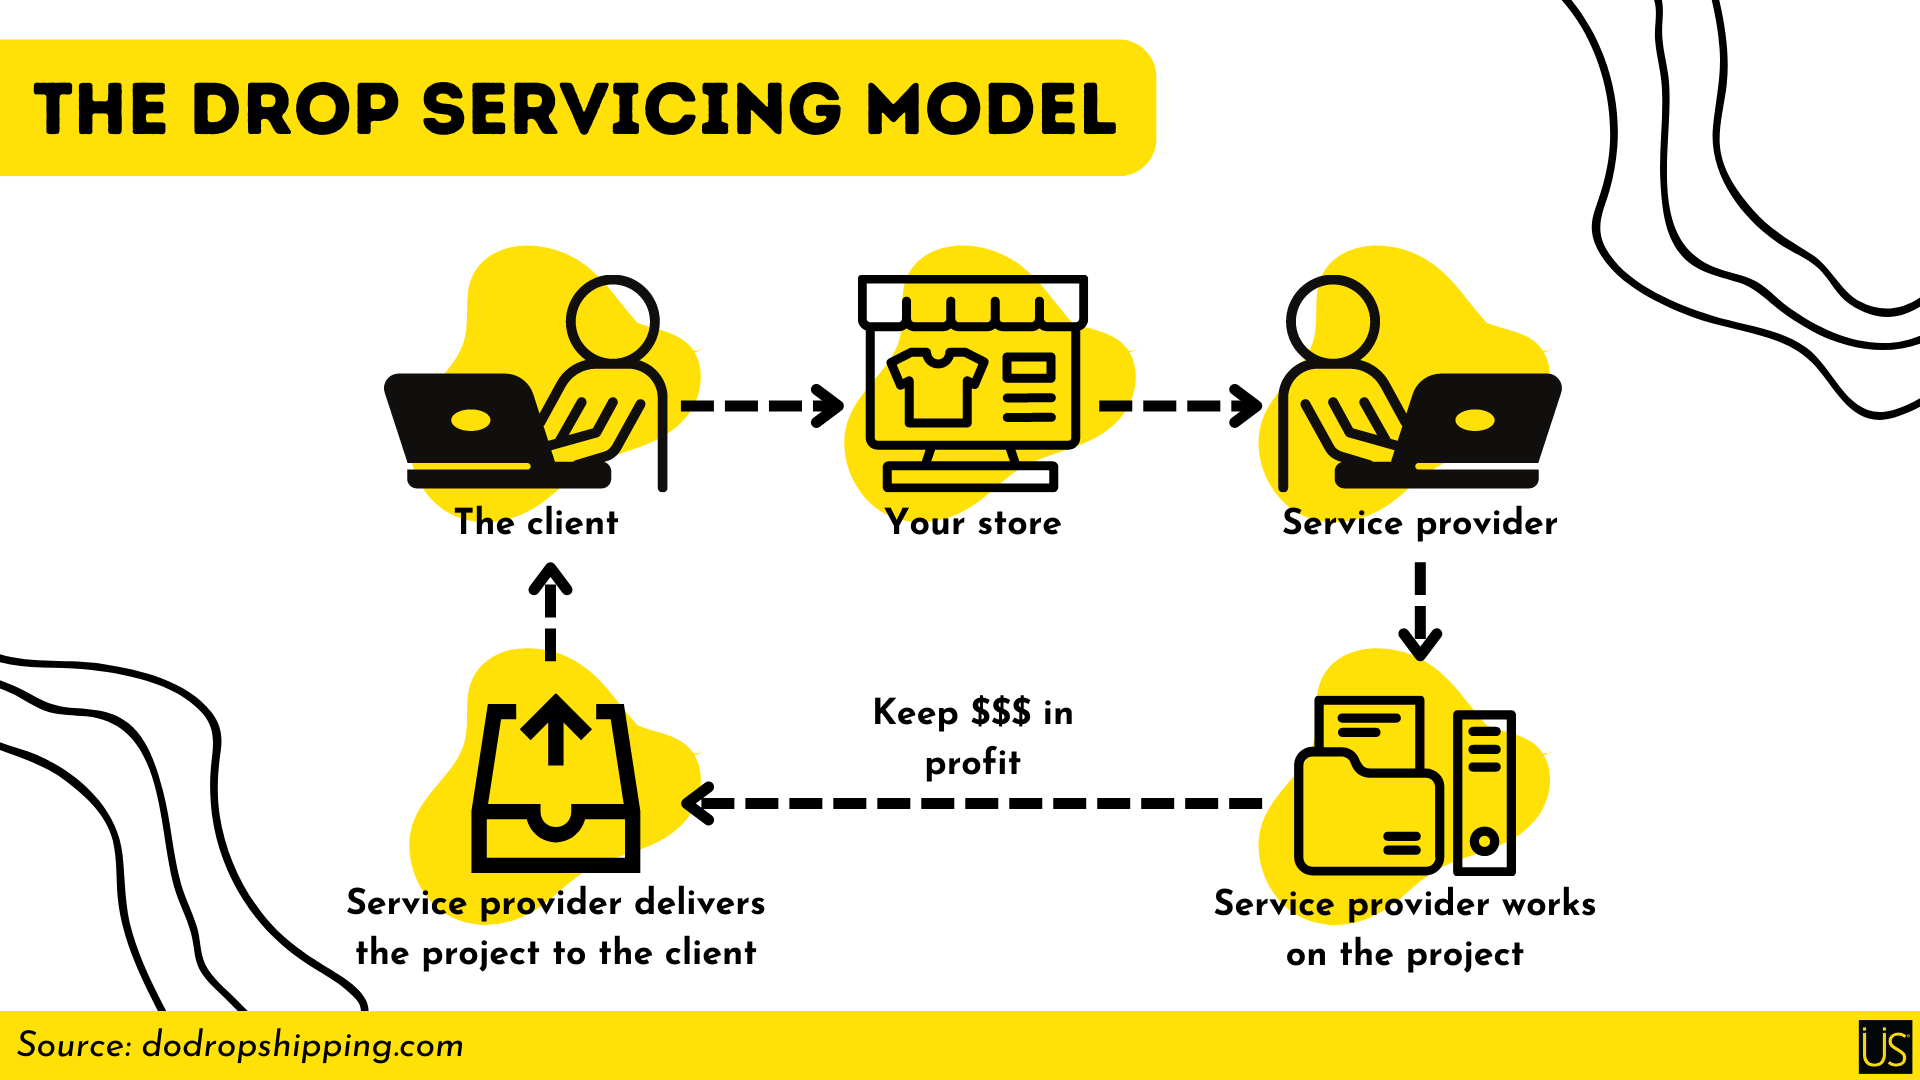 The drop servicing model